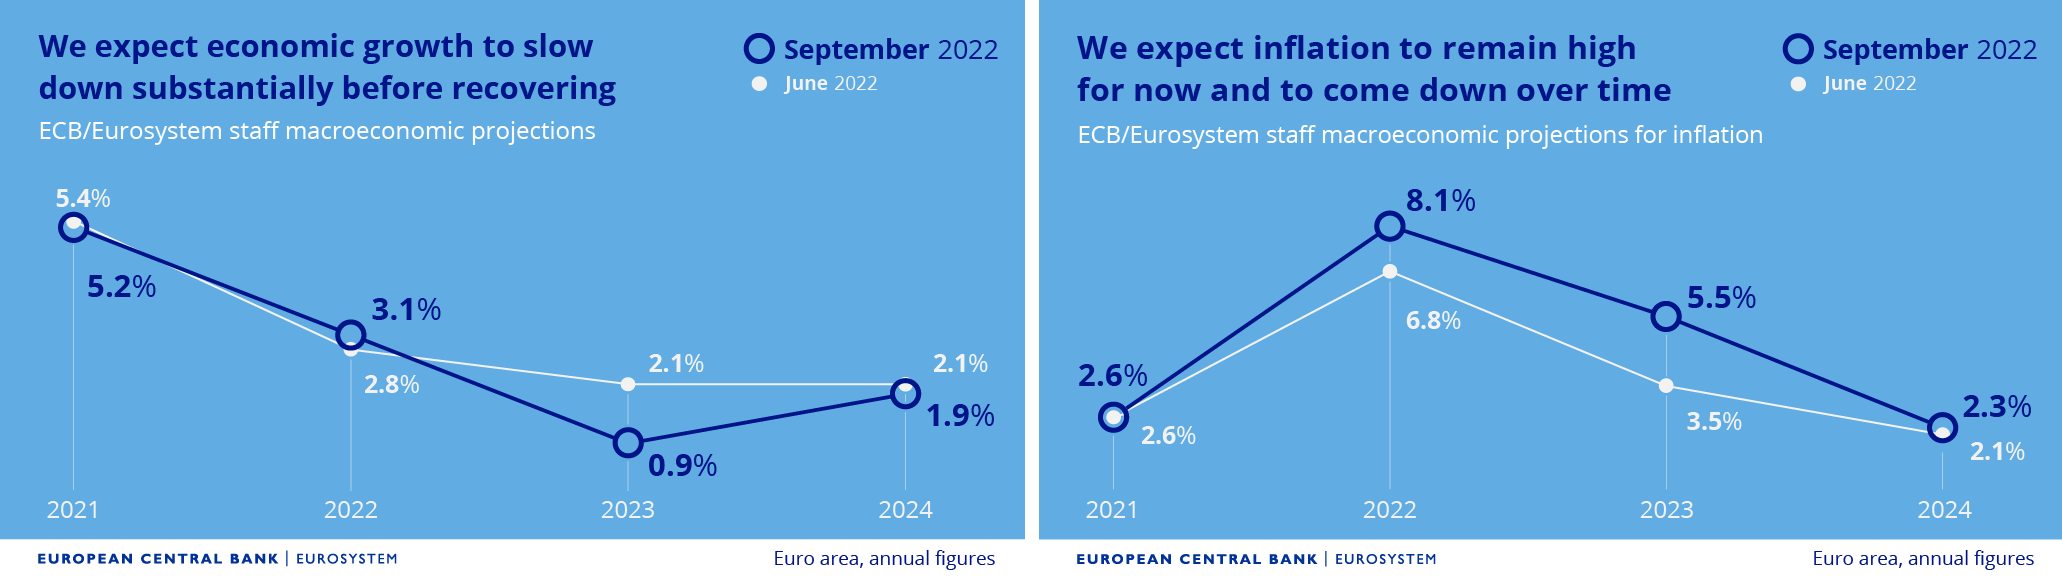 ECB - odhad vývoje ekonomiky eurozóny, zdroj: ECB